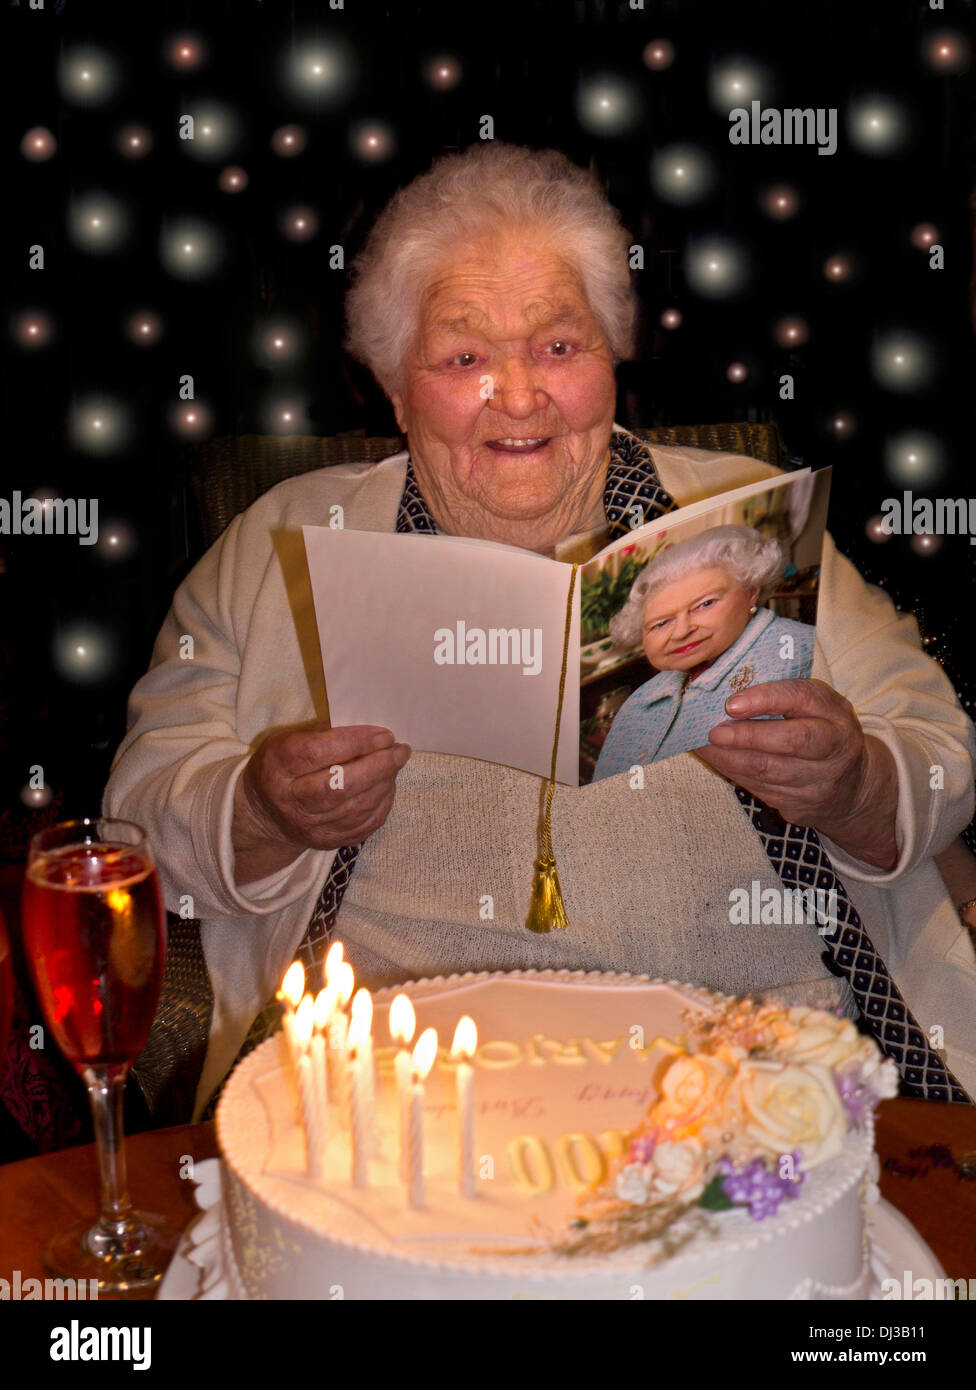 100 Anni Card Celebrations Happy ALERT donna anziana a 100 anni di età con la sua torta di compleanno e tradizionale carta di congratulazioni da HM la Regina Foto Stock